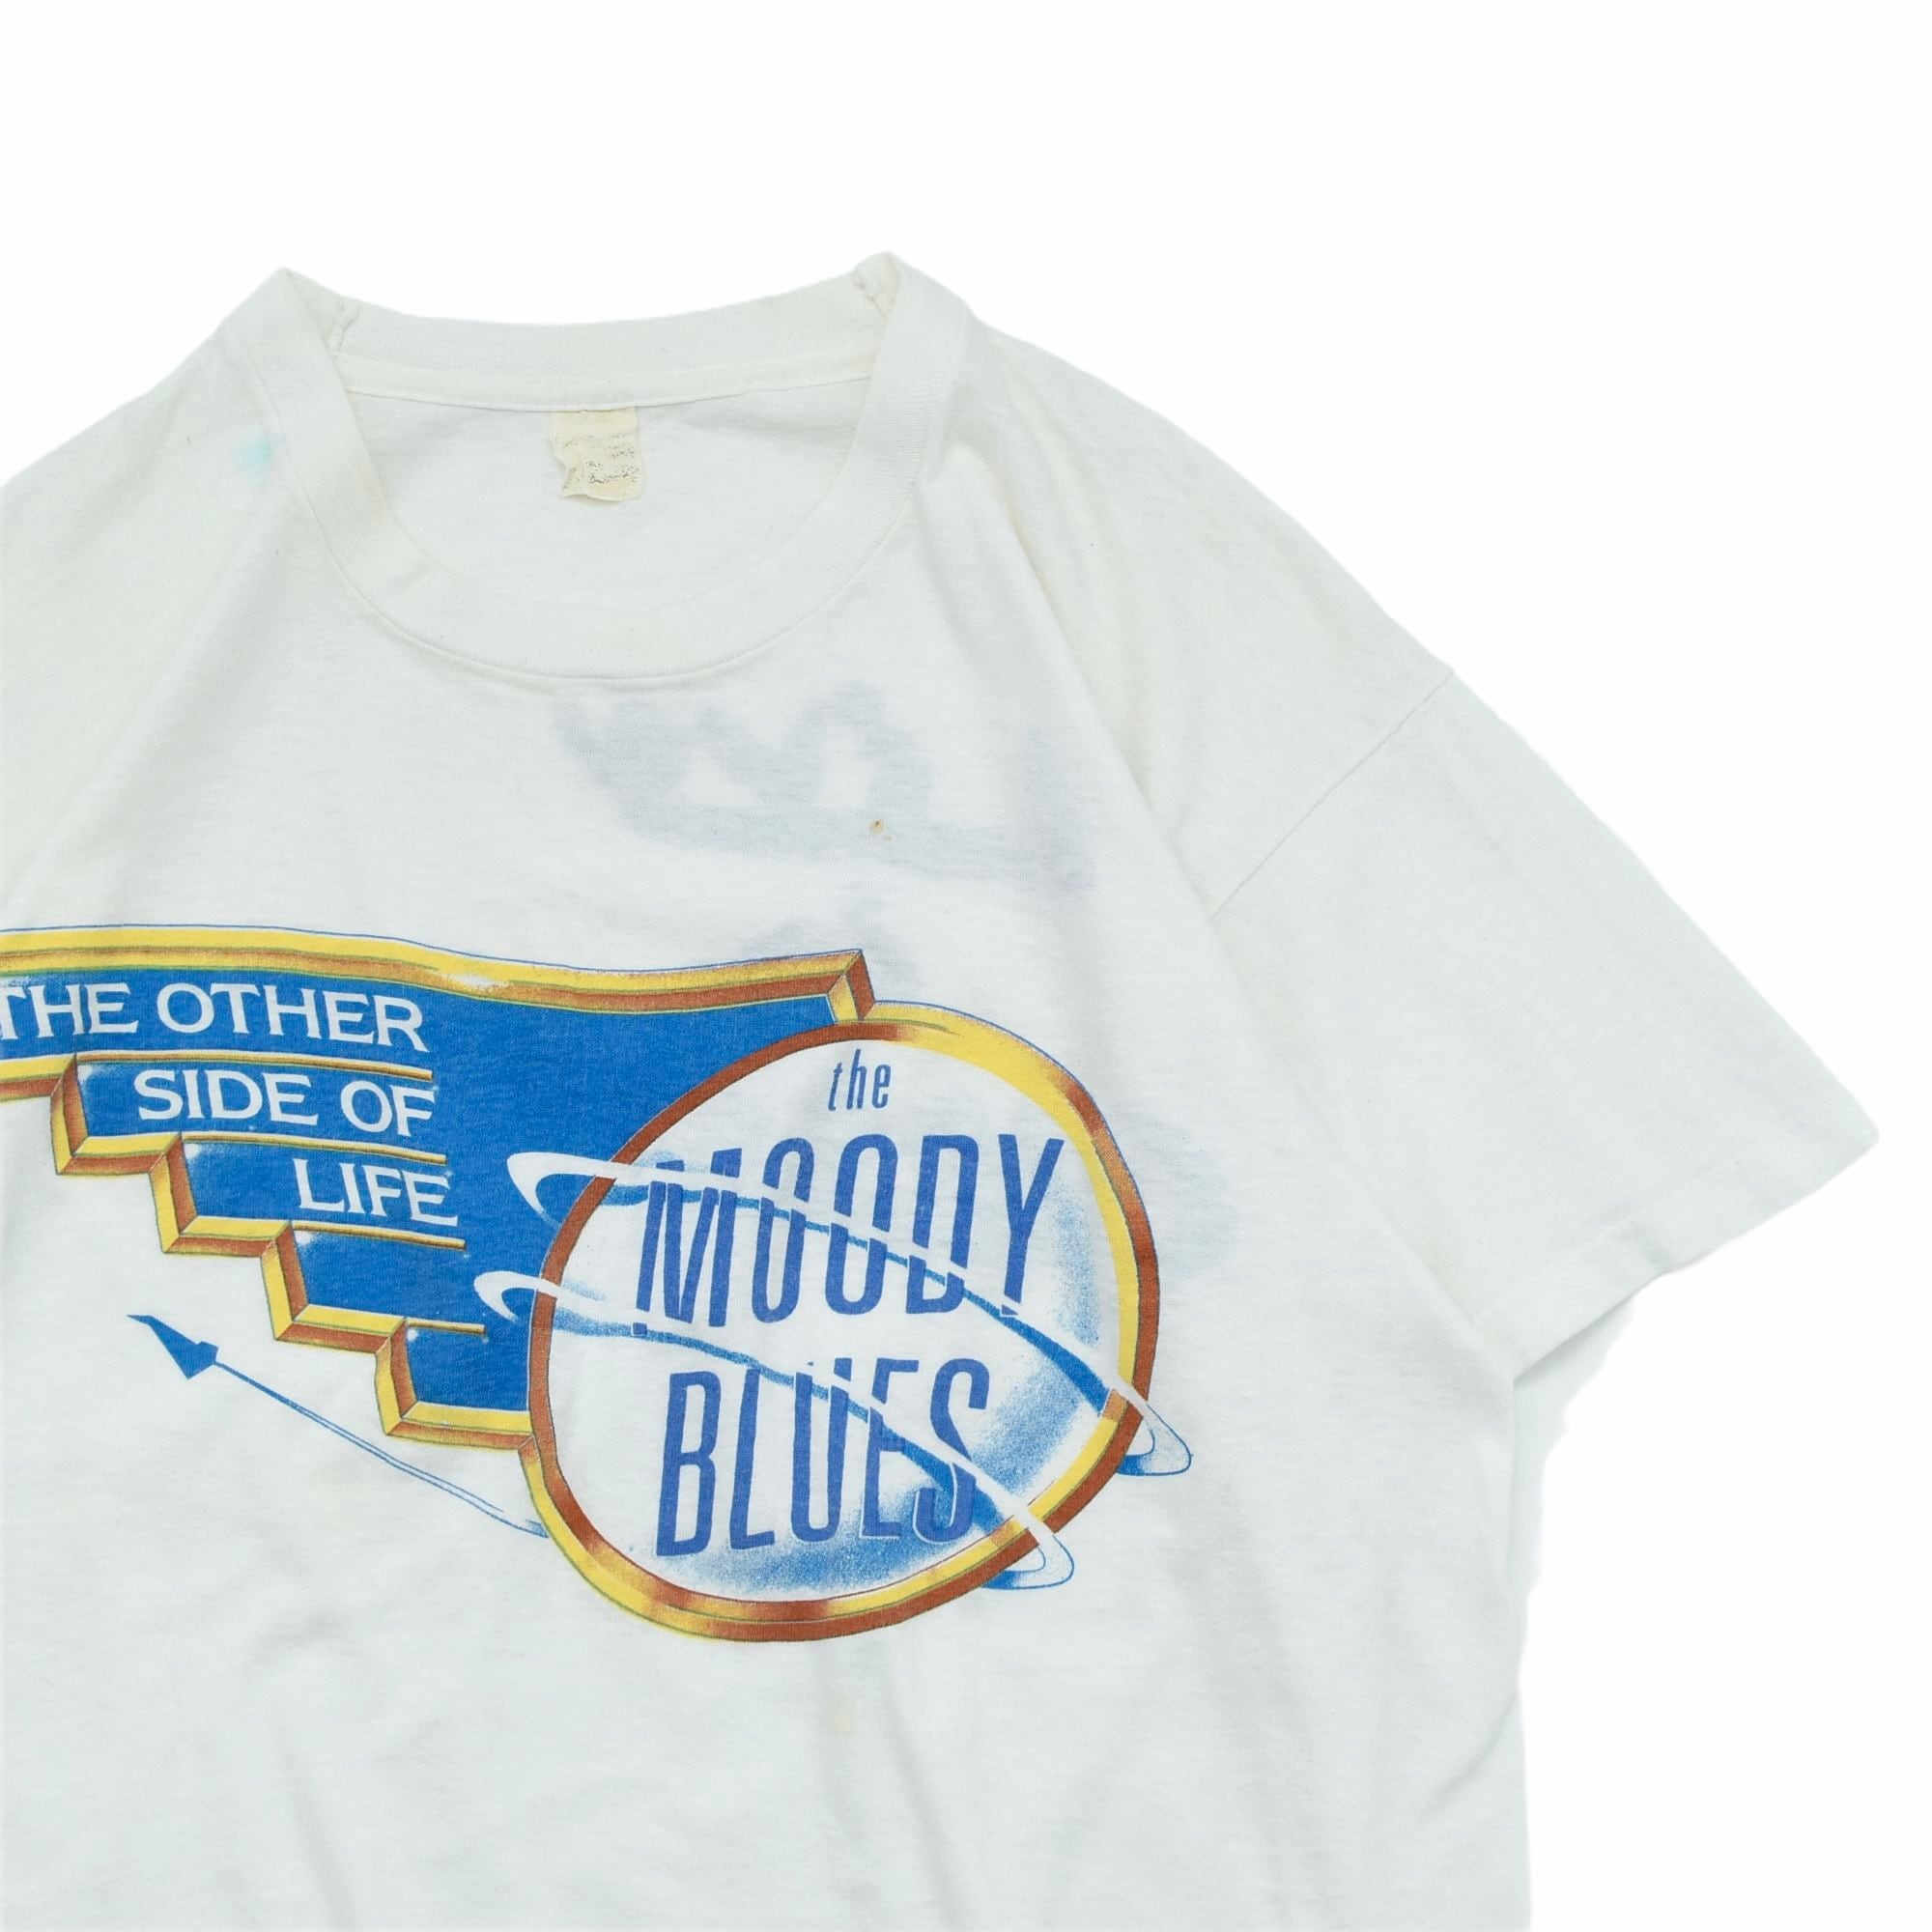 90s Moody Blues ムーディーブルース プリント Tシャツ L 黒